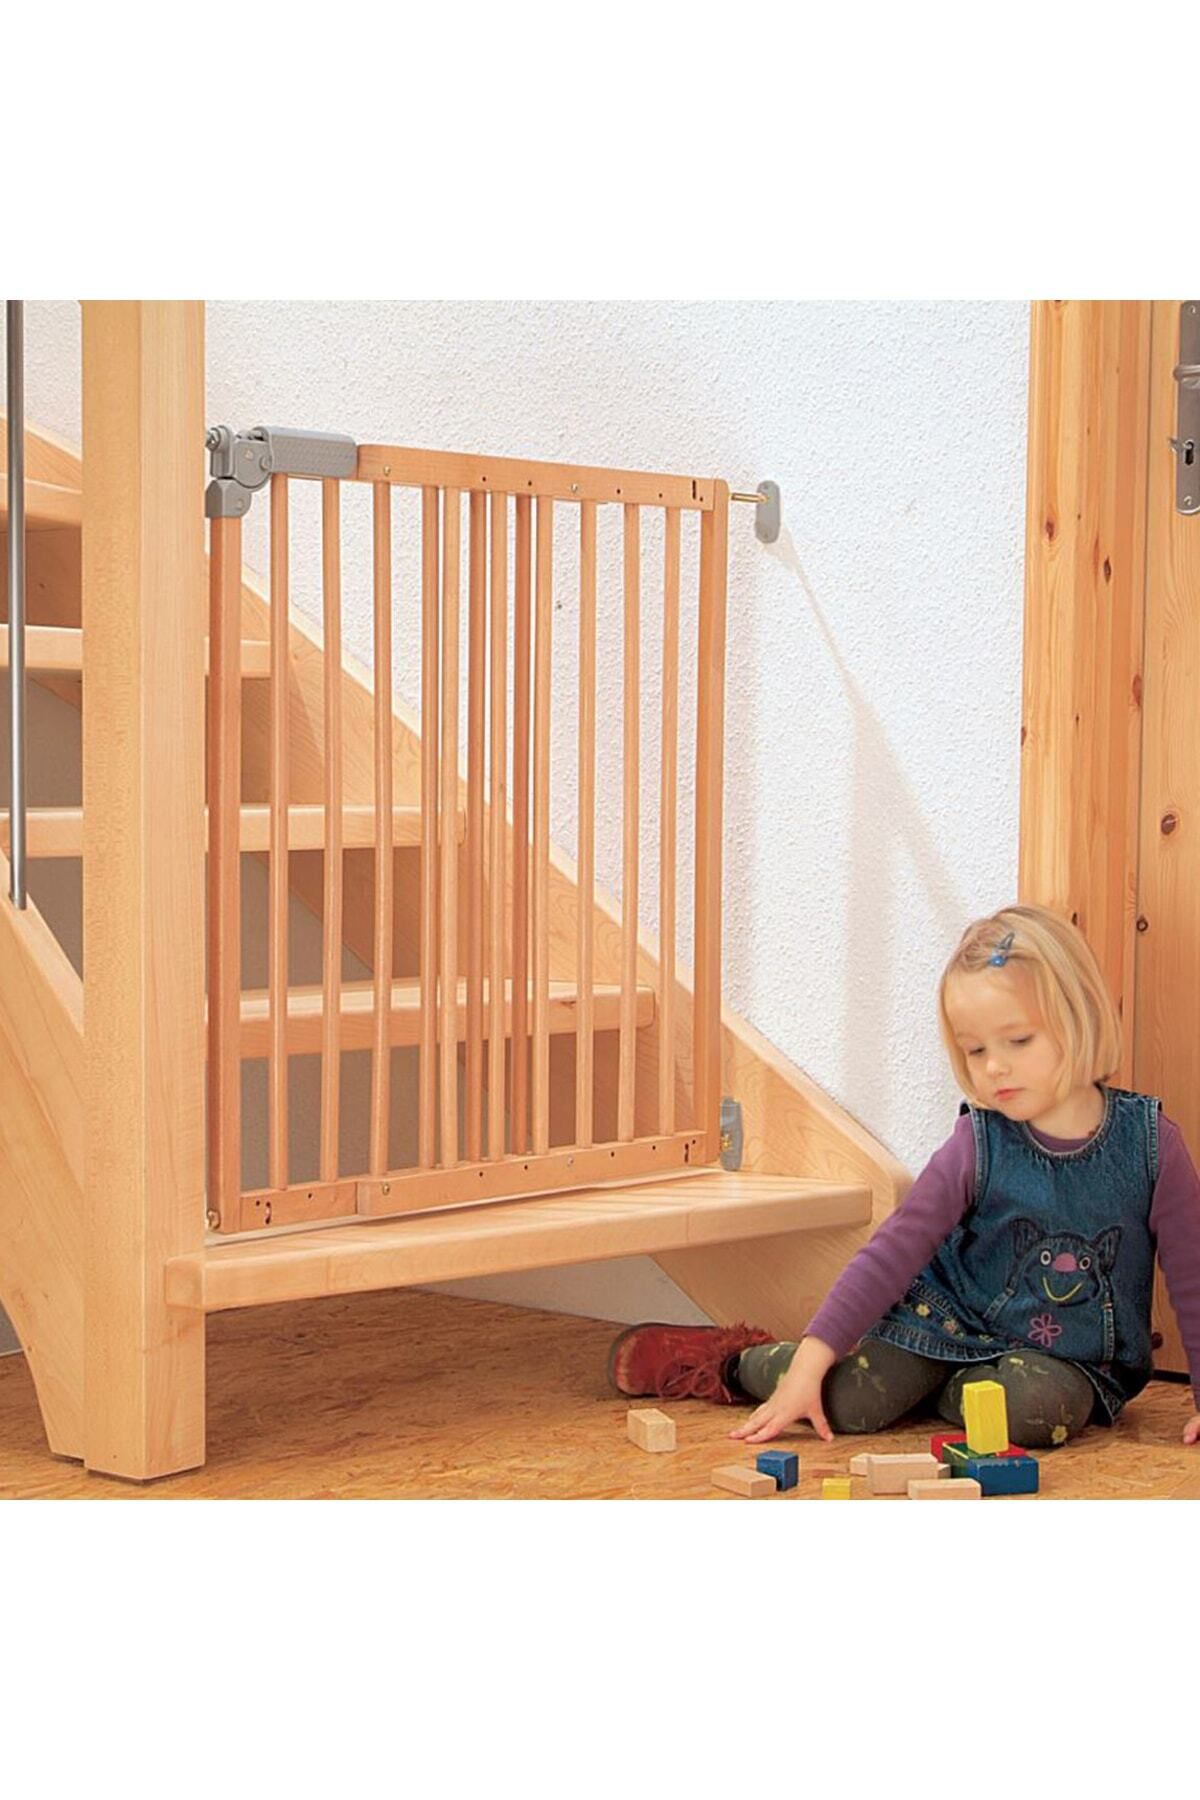 Magnotto Çocuk Bebek Koruma Parmaklık Kapı Çocuk Merdiven Koruma Kapısı Çocuk Güvenlik Kapısı